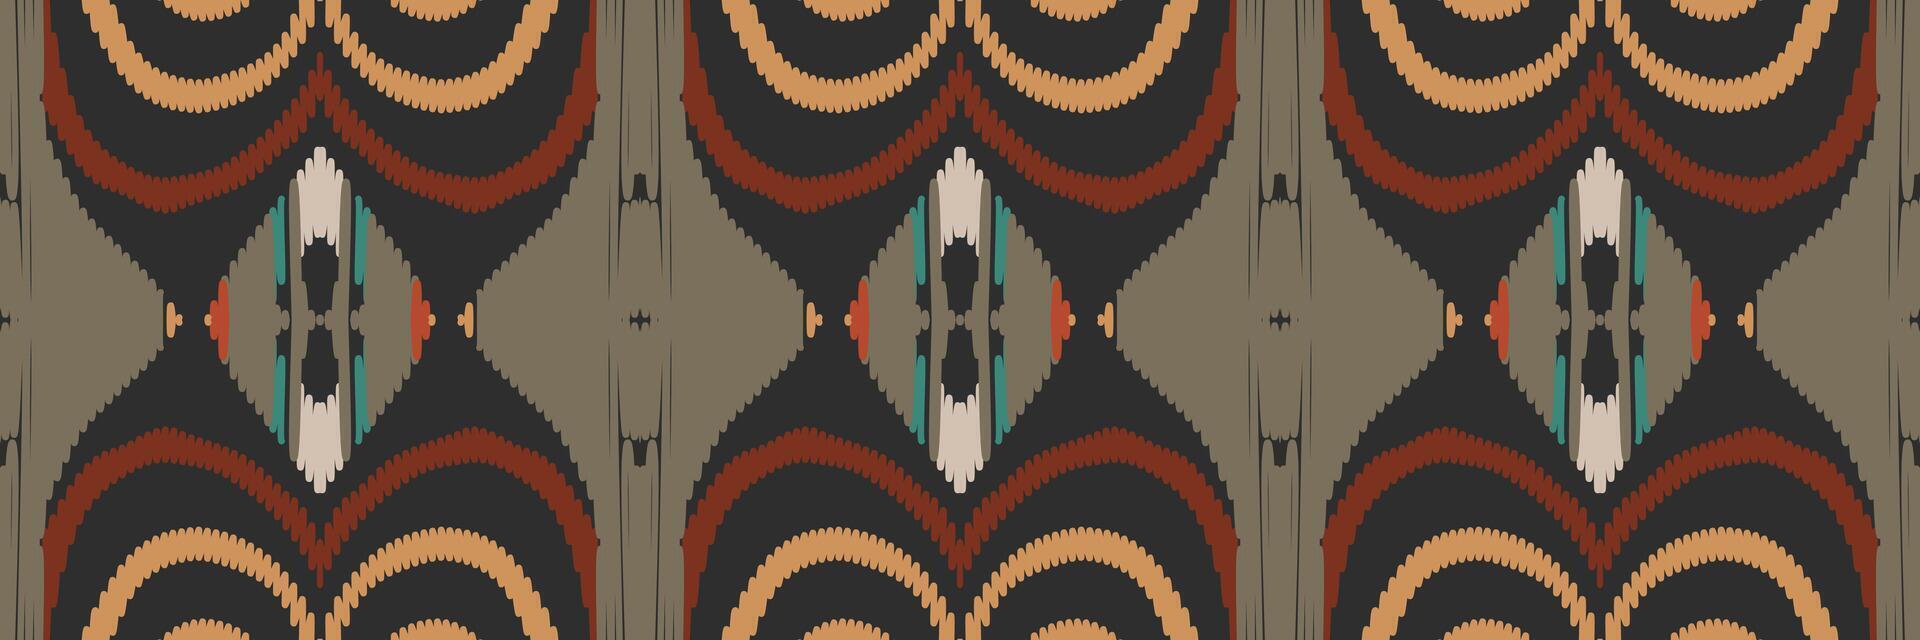 padrão ikat em tribal. geométrica étnica tradicional. estilo listrado mexicano. design para plano de fundo, papel de parede, ilustração vetorial, tecido, roupas, batik, tapete, bordado. vetor